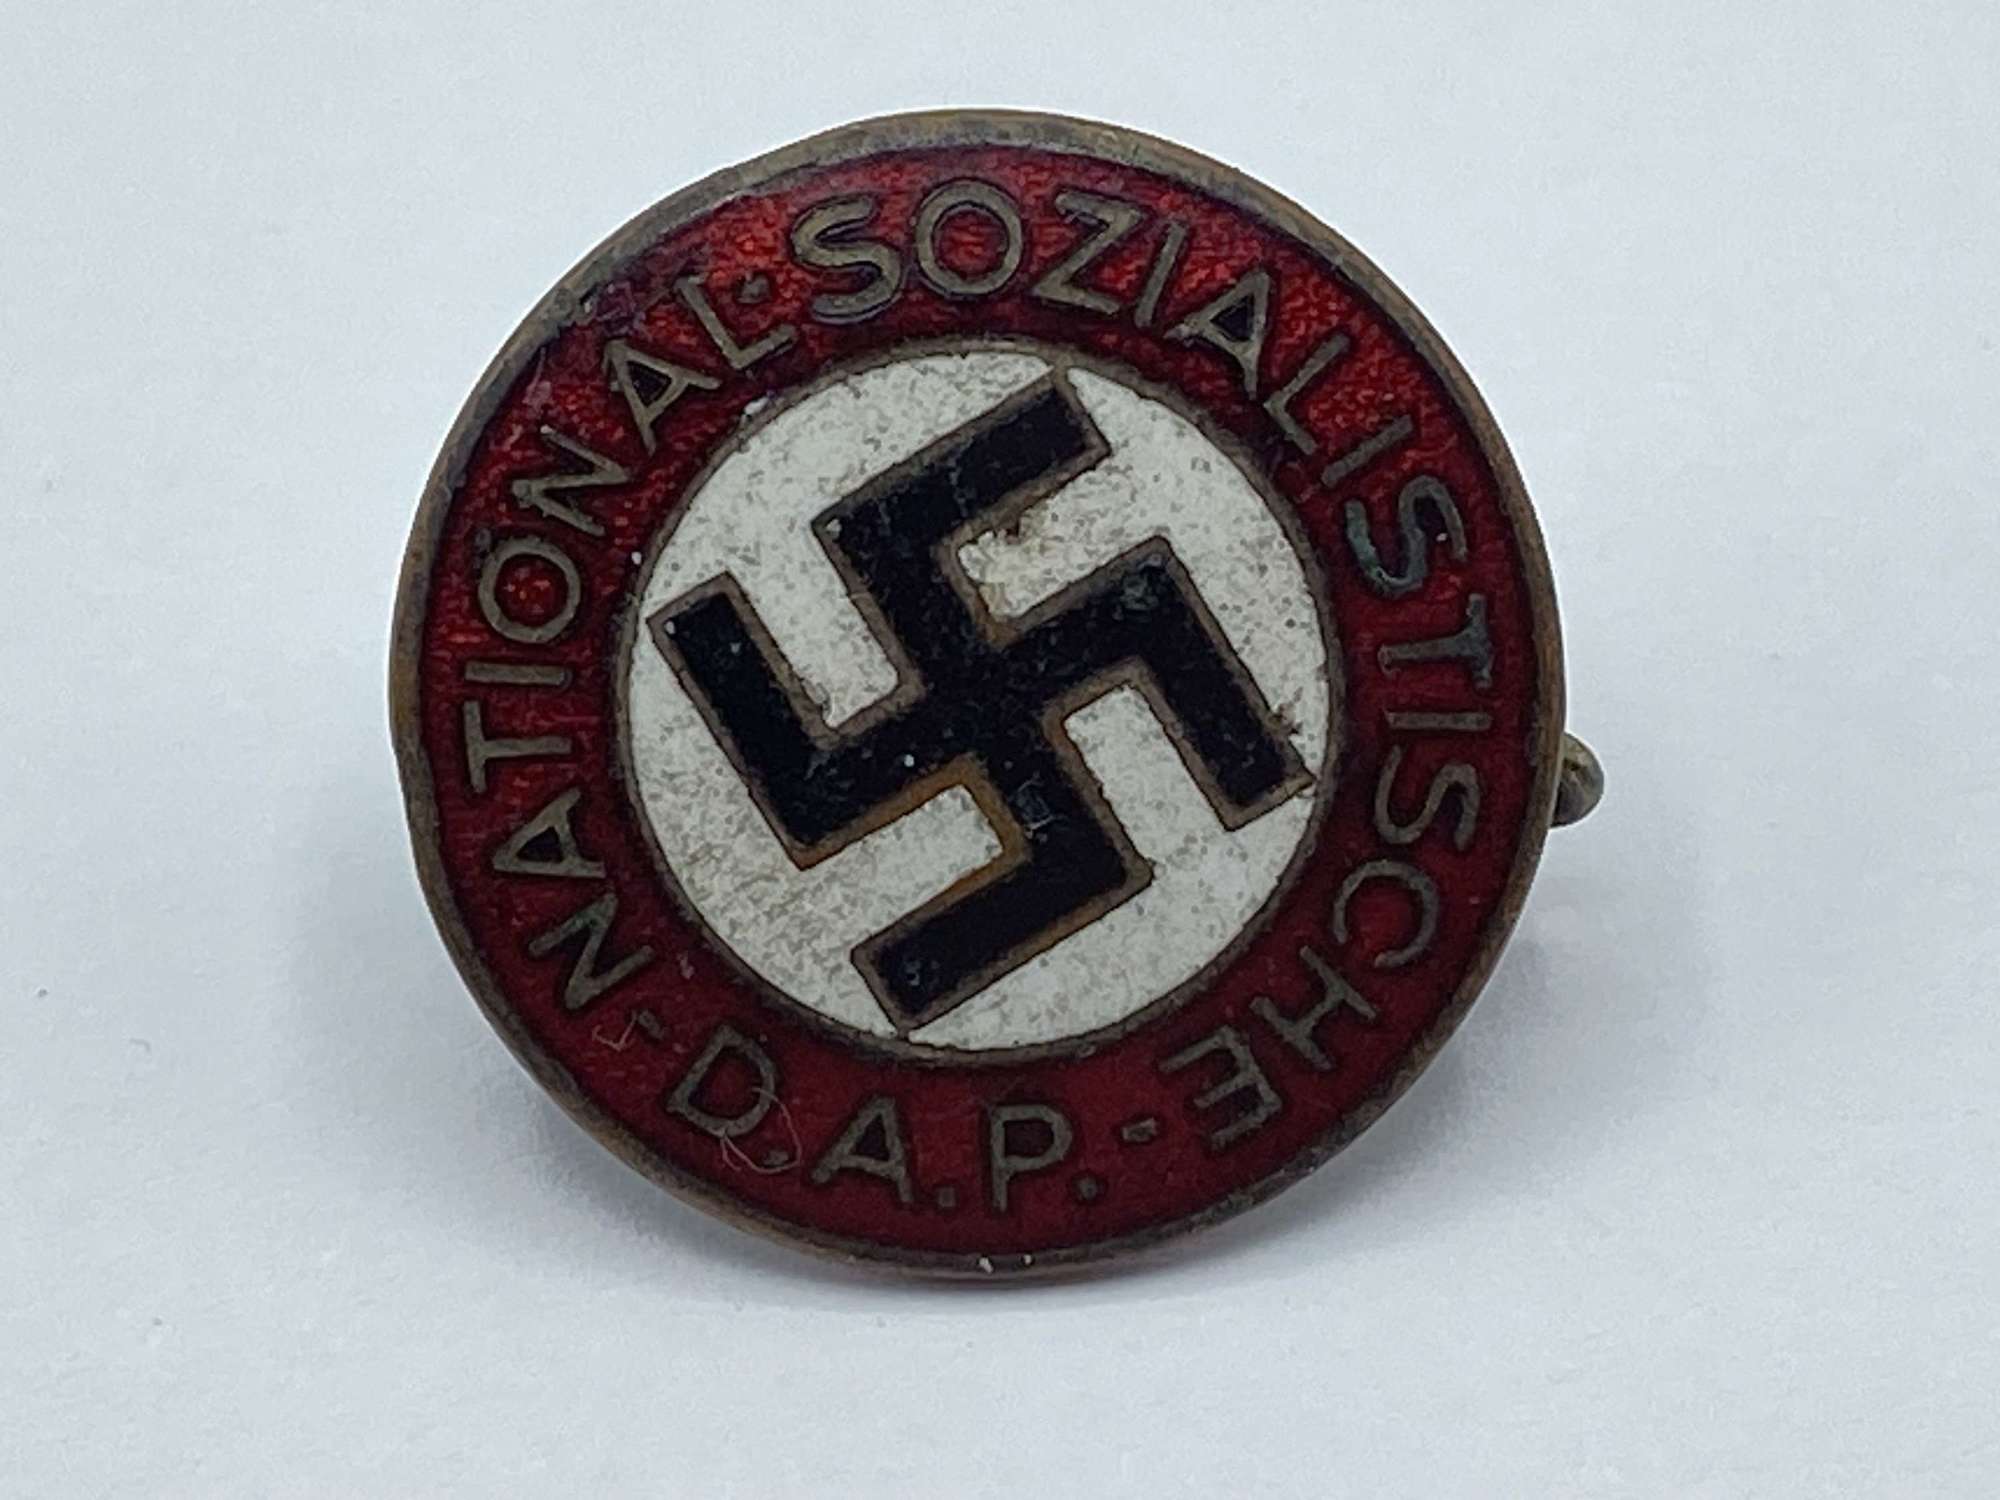 WW2 German NSDAP Membership Badge By Steinhauer & Lück Lüdenscheid